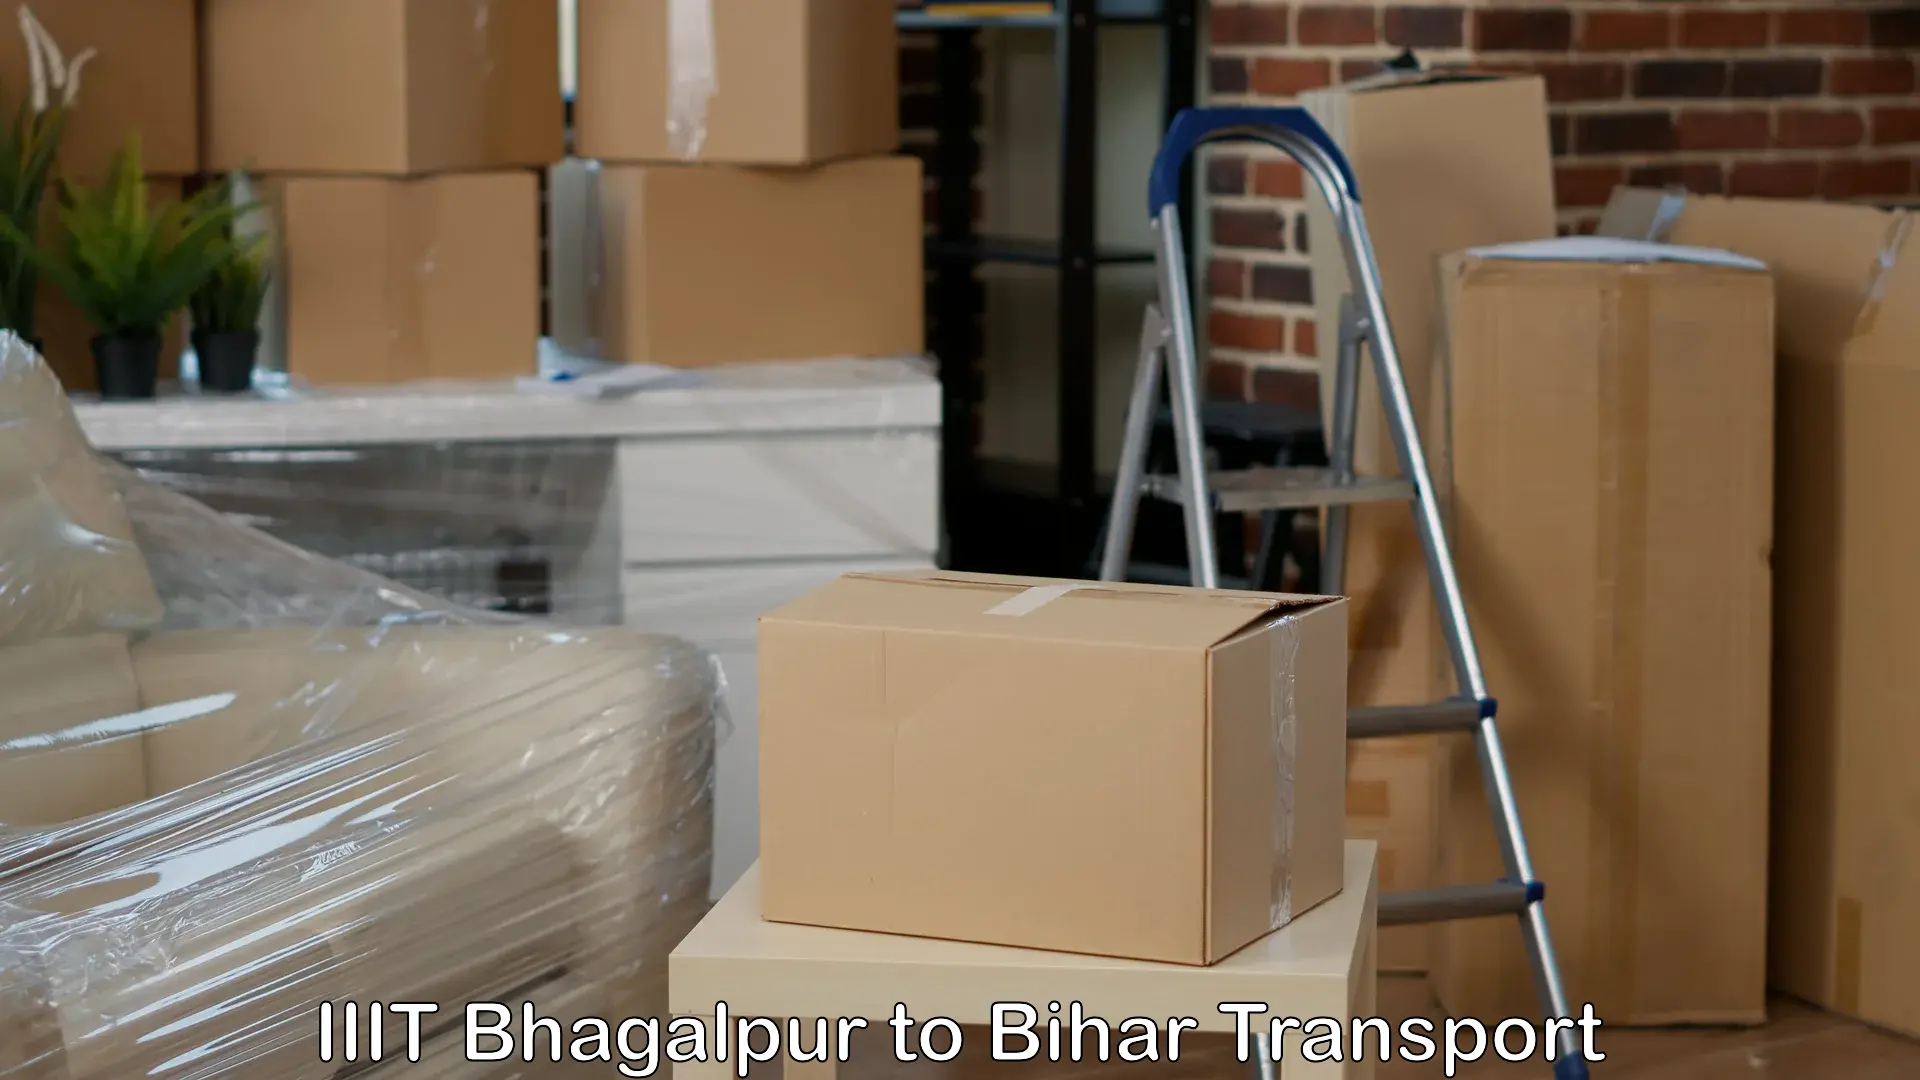 Cargo transport services IIIT Bhagalpur to Muzaffarpur